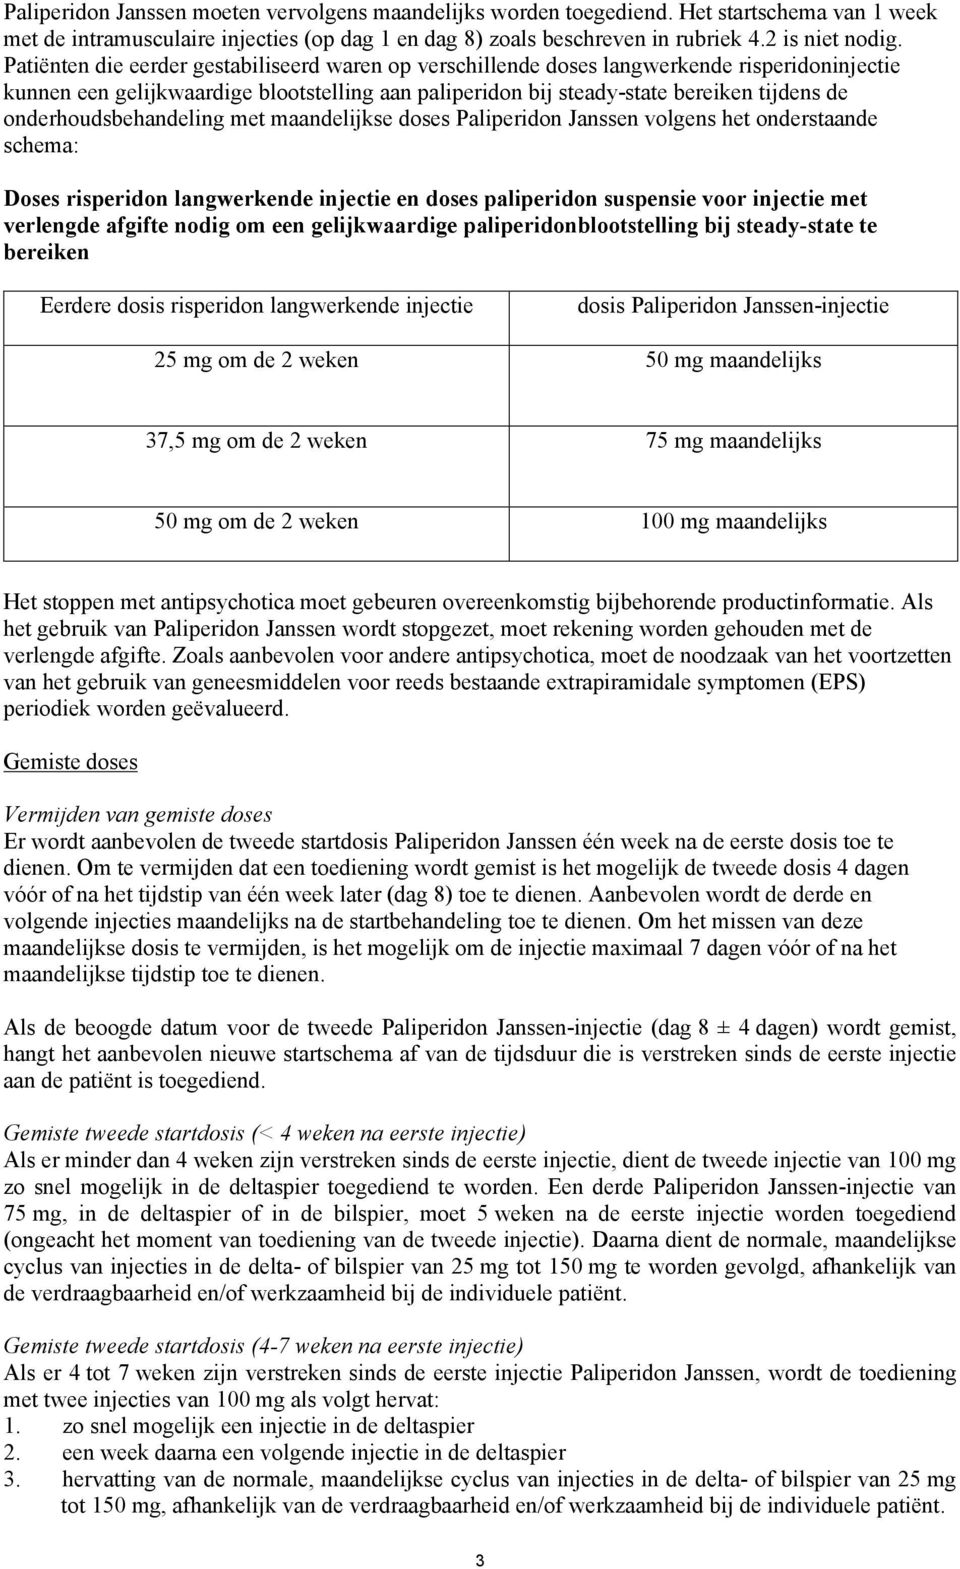 onderhoudsbehandeling met maandelijkse doses Paliperidon Janssen volgens het onderstaande schema: Doses risperidon langwerkende injectie en doses paliperidon suspensie voor injectie met verlengde